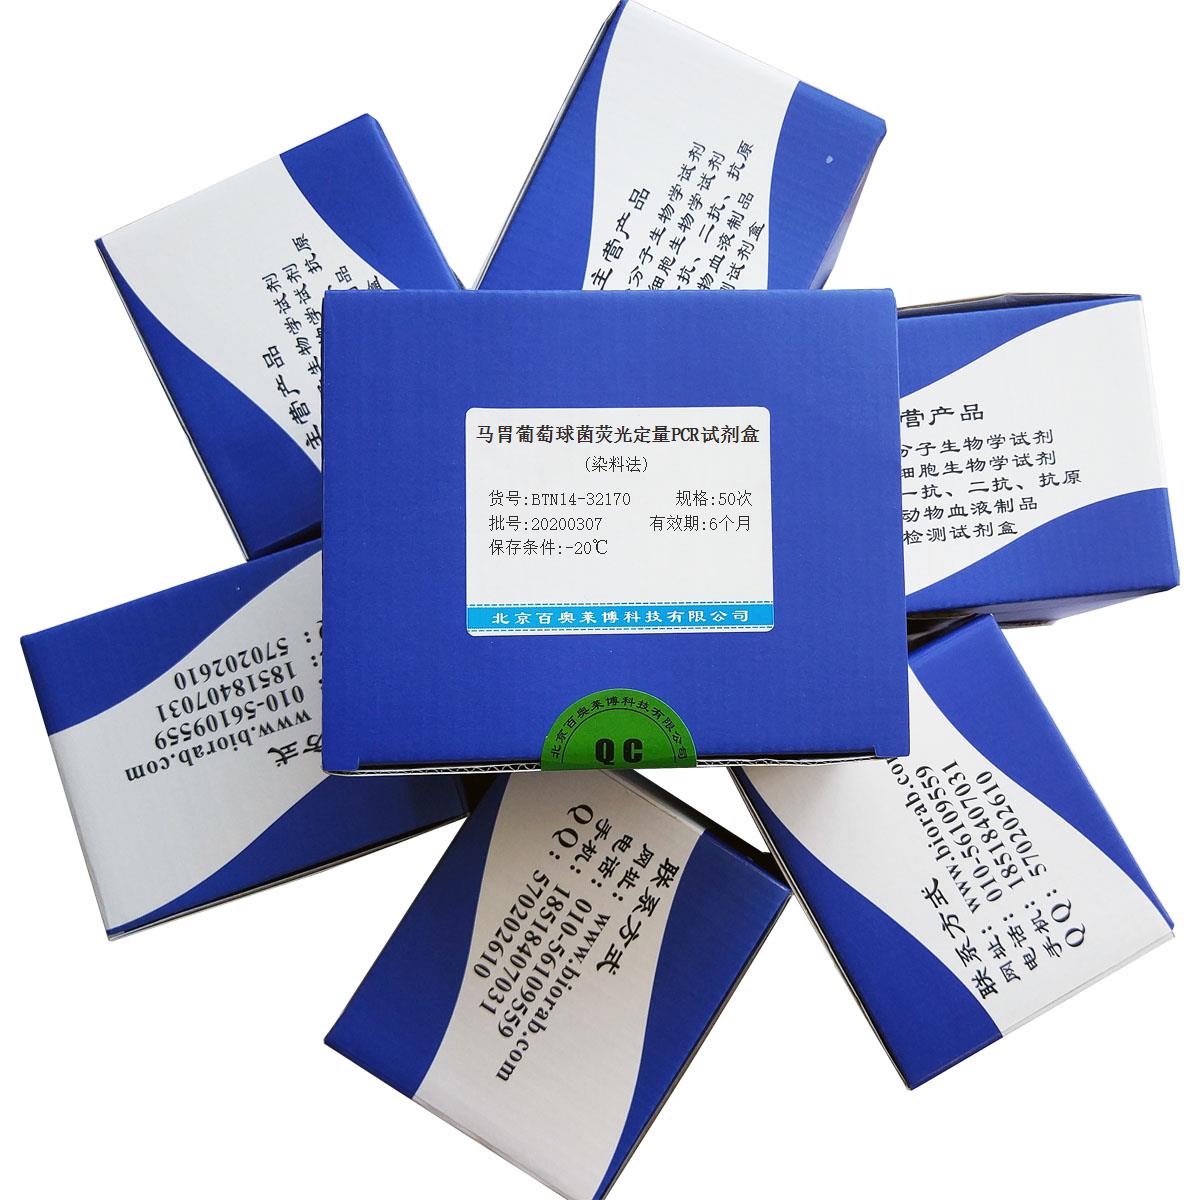 马胃葡萄球菌荧光定量PCR试剂盒(染料法)